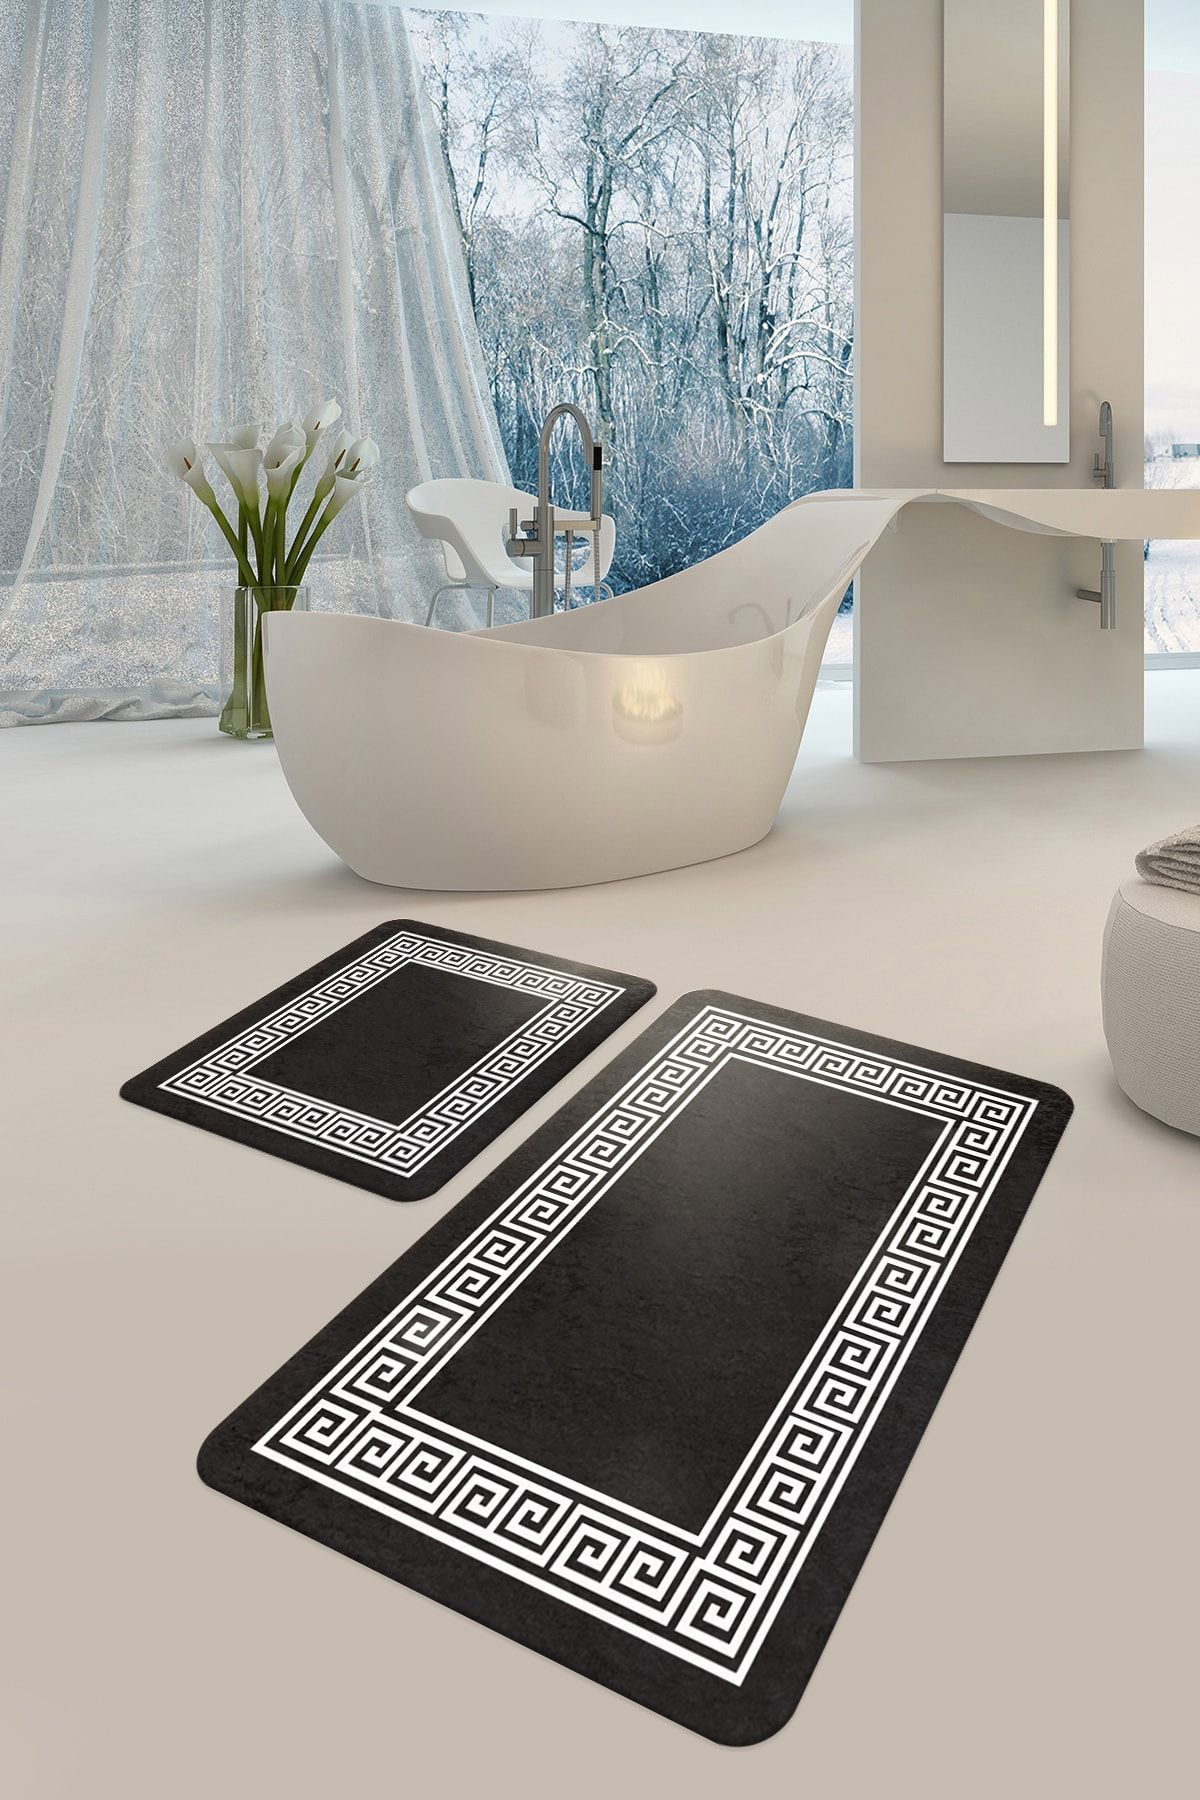 DEKOMOD Dekoratif Baskılı Banyo Set Paspas 2'li Set Kaymaz Yıkanabilir Siyah Dot Taban (60x90 Ve 50x60)